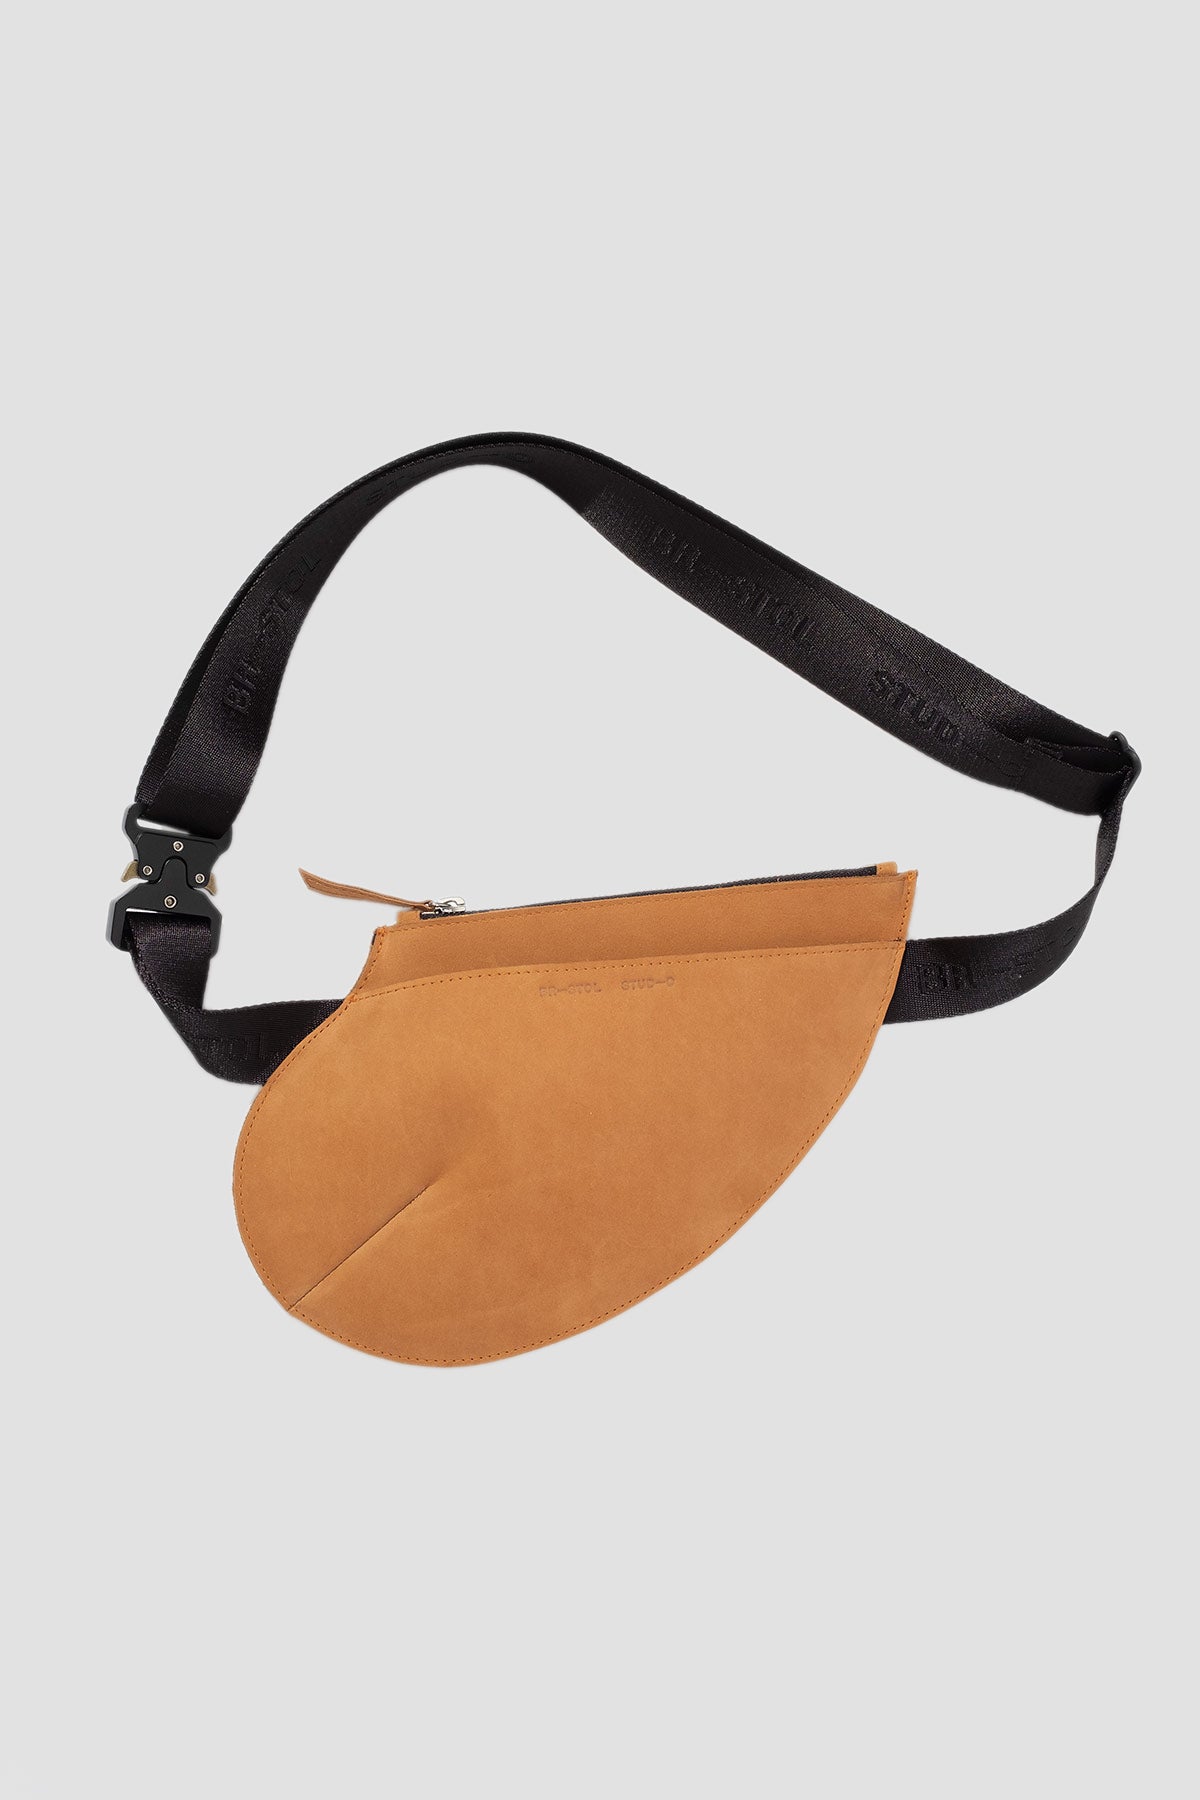 Leather Pocket Bag